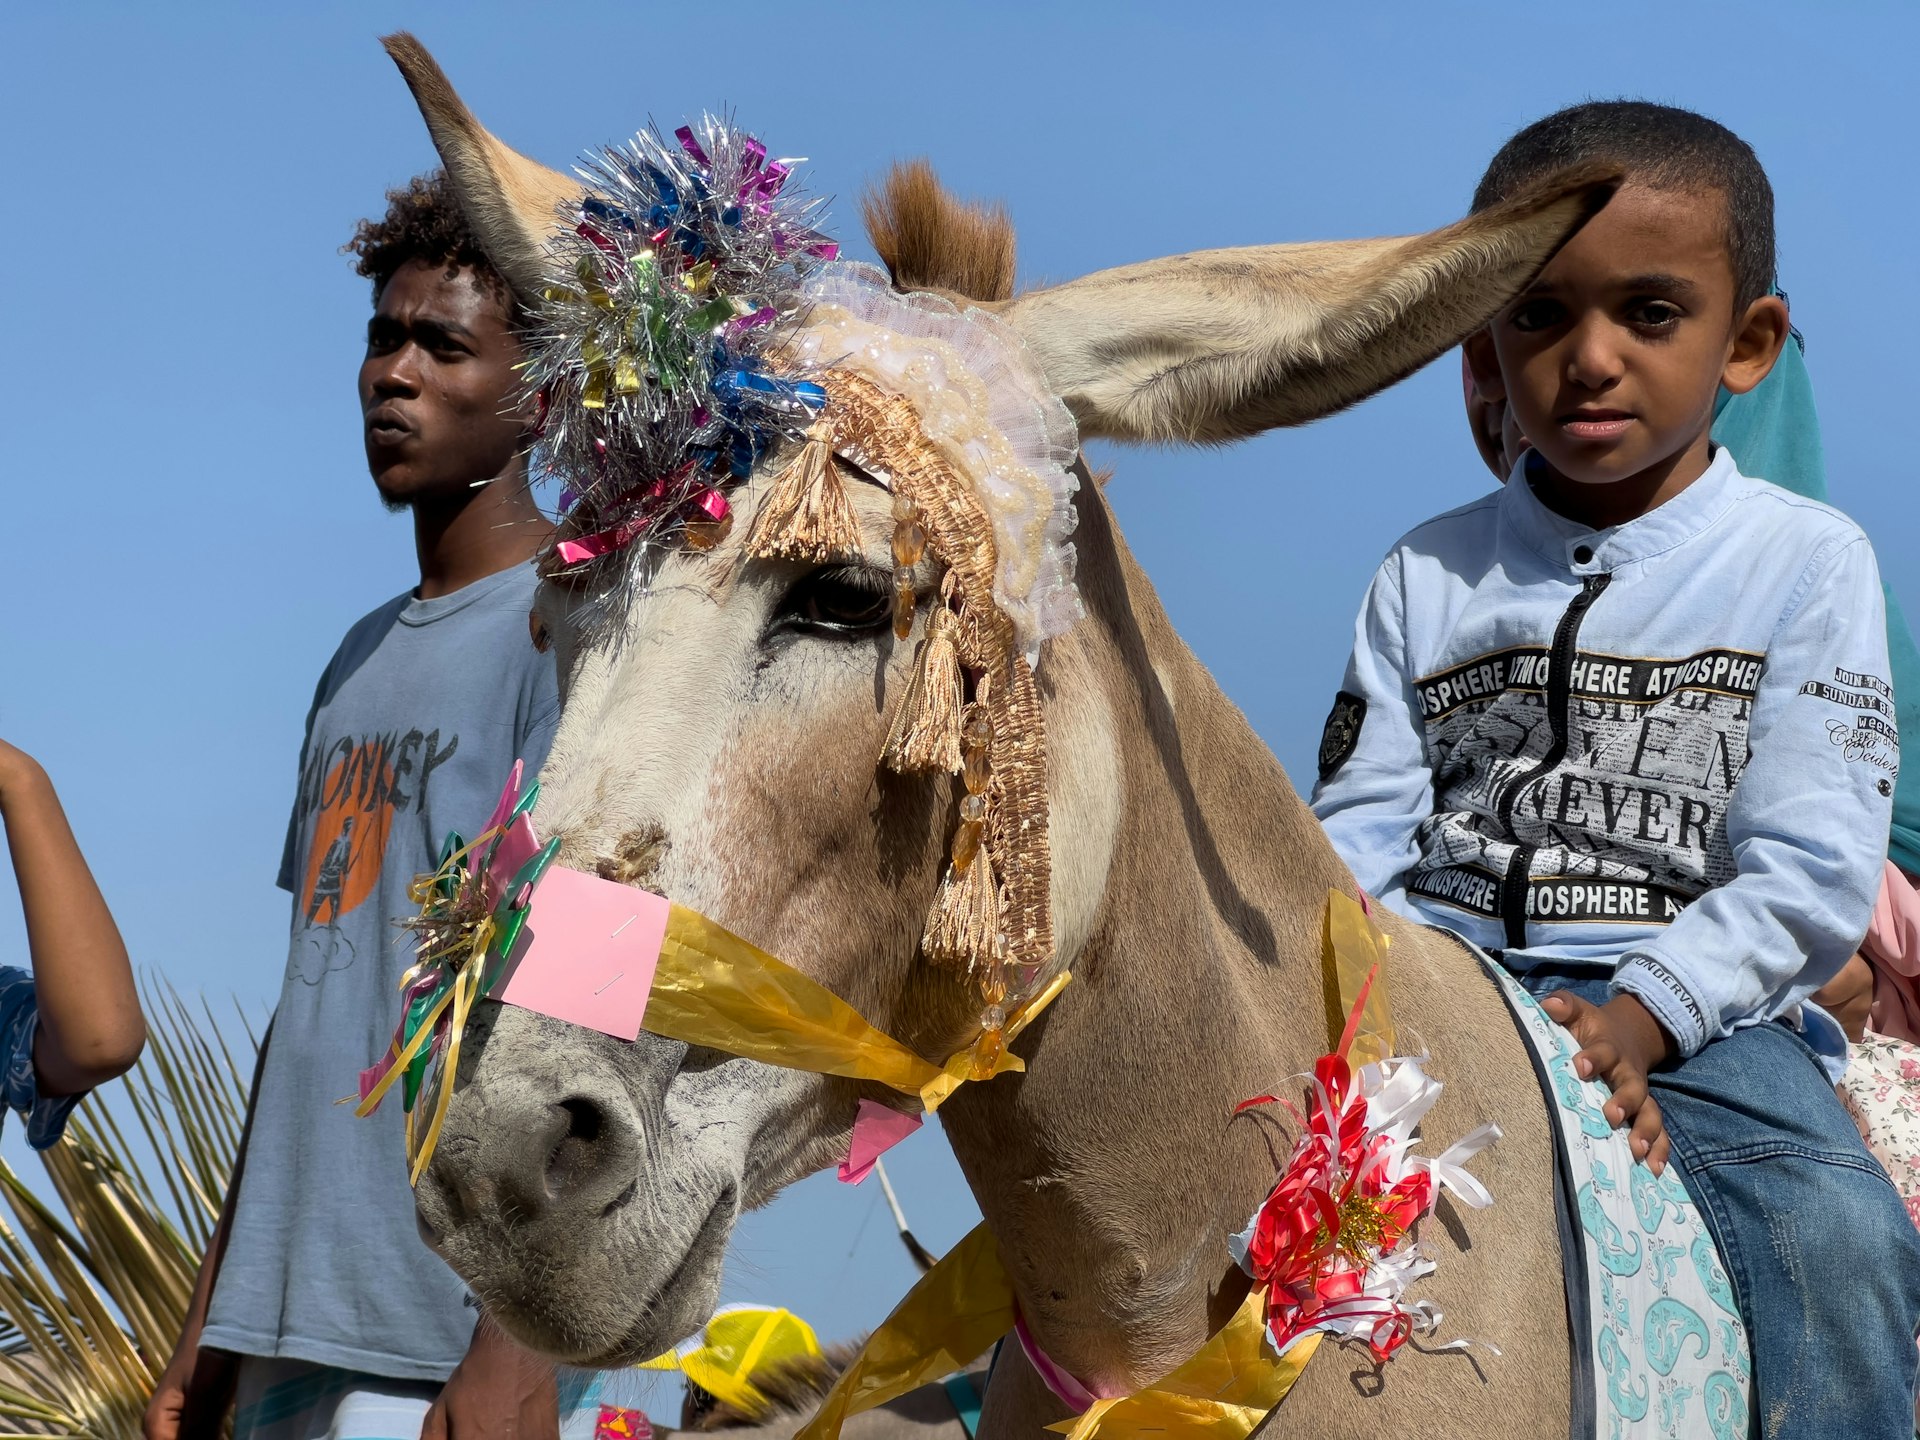 Gallery: The beautiful donkeys of Lamu